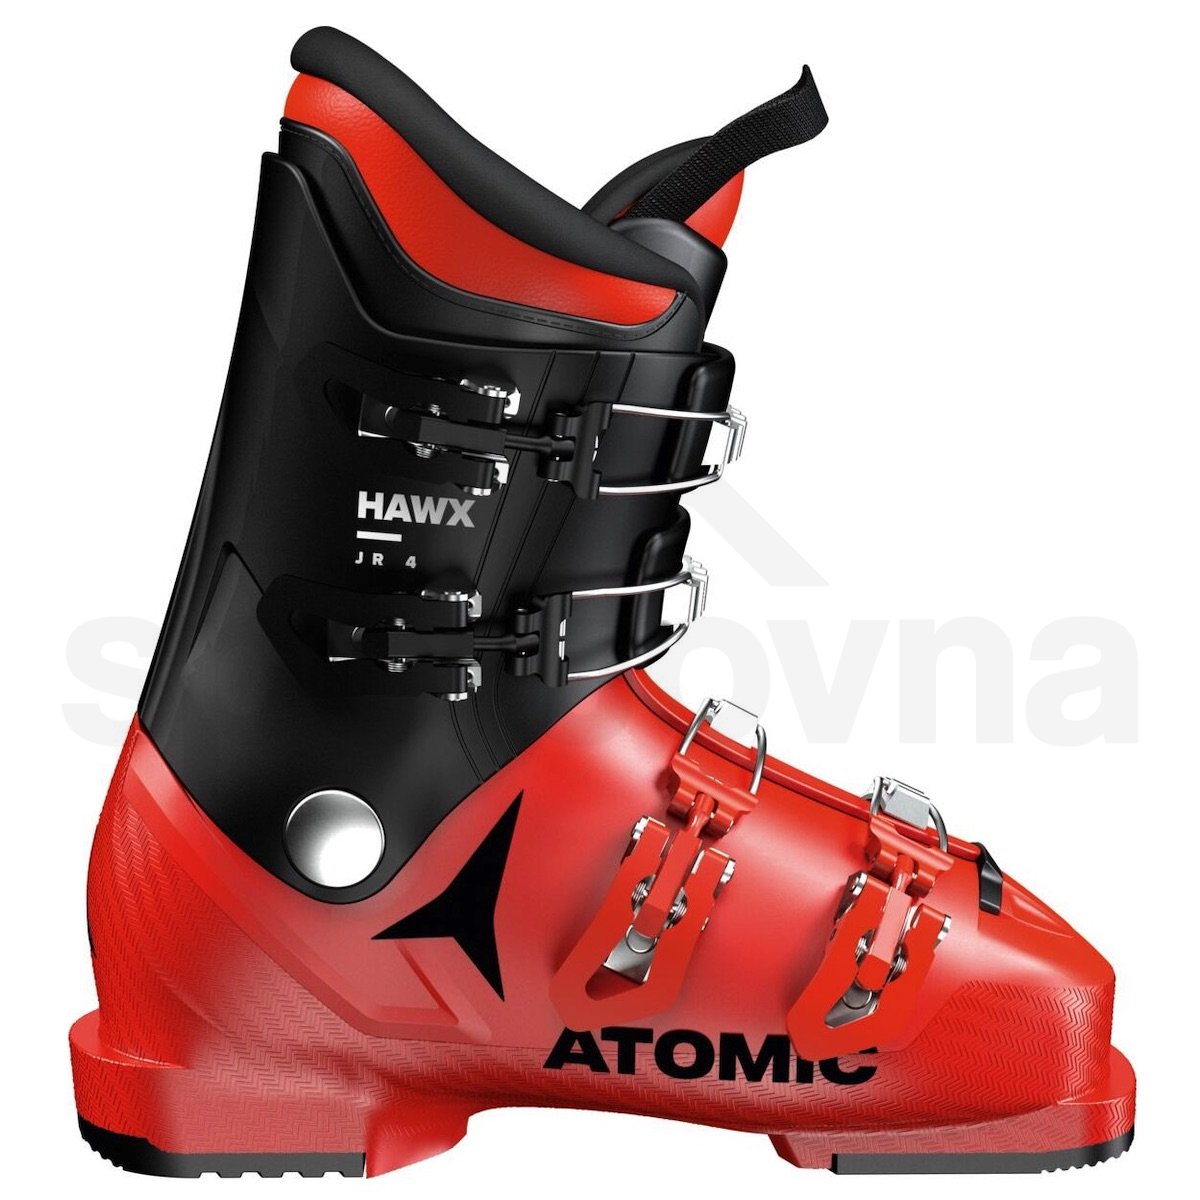 Lyžařské boty Atomic Hawx Jr 4 - červená/černá